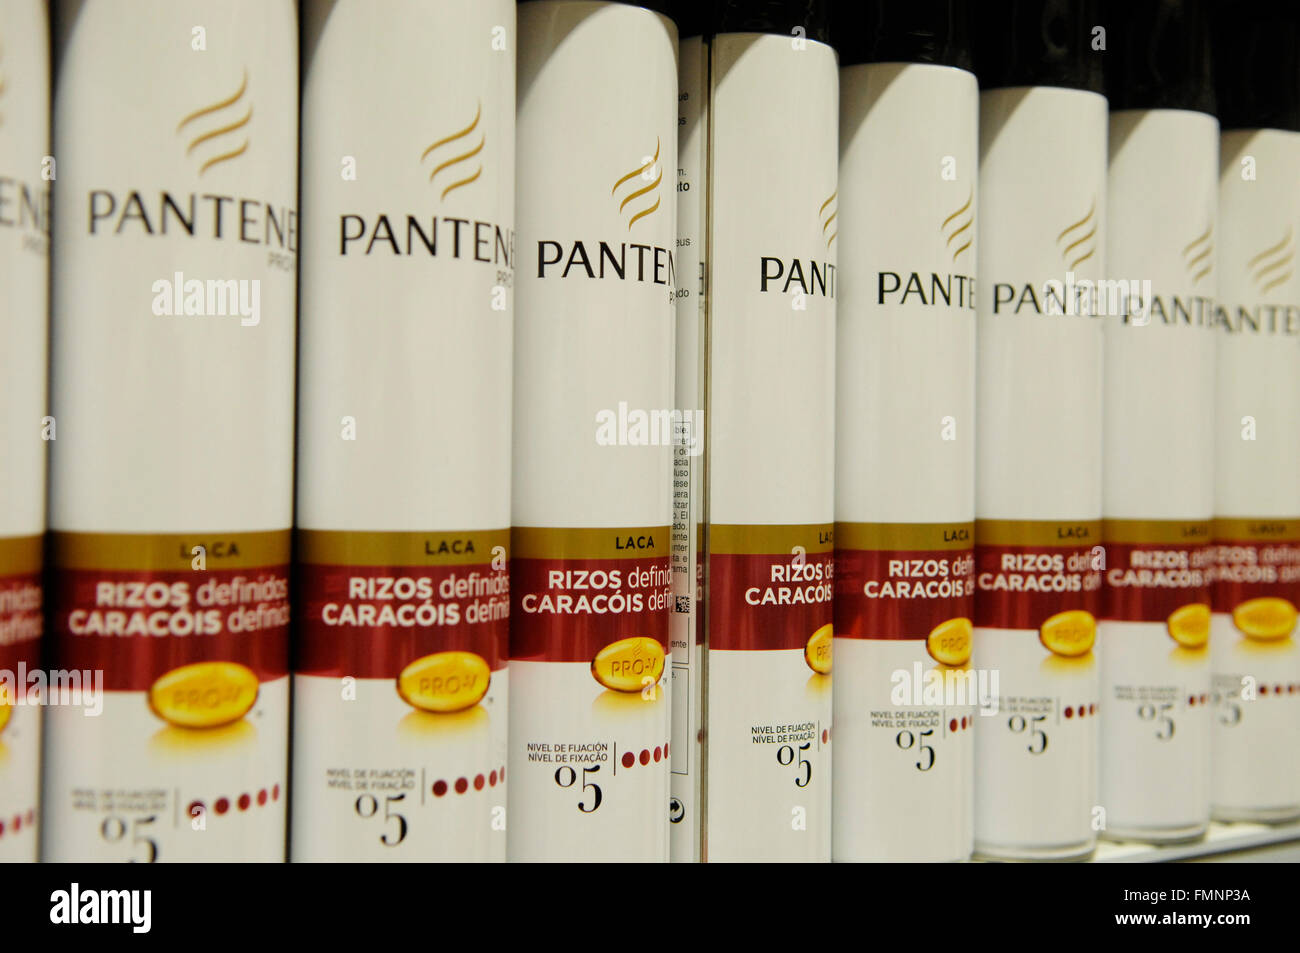 Botellas de champú Pantene en Carrefour, Málaga, España Fotografía de stock  - Alamy